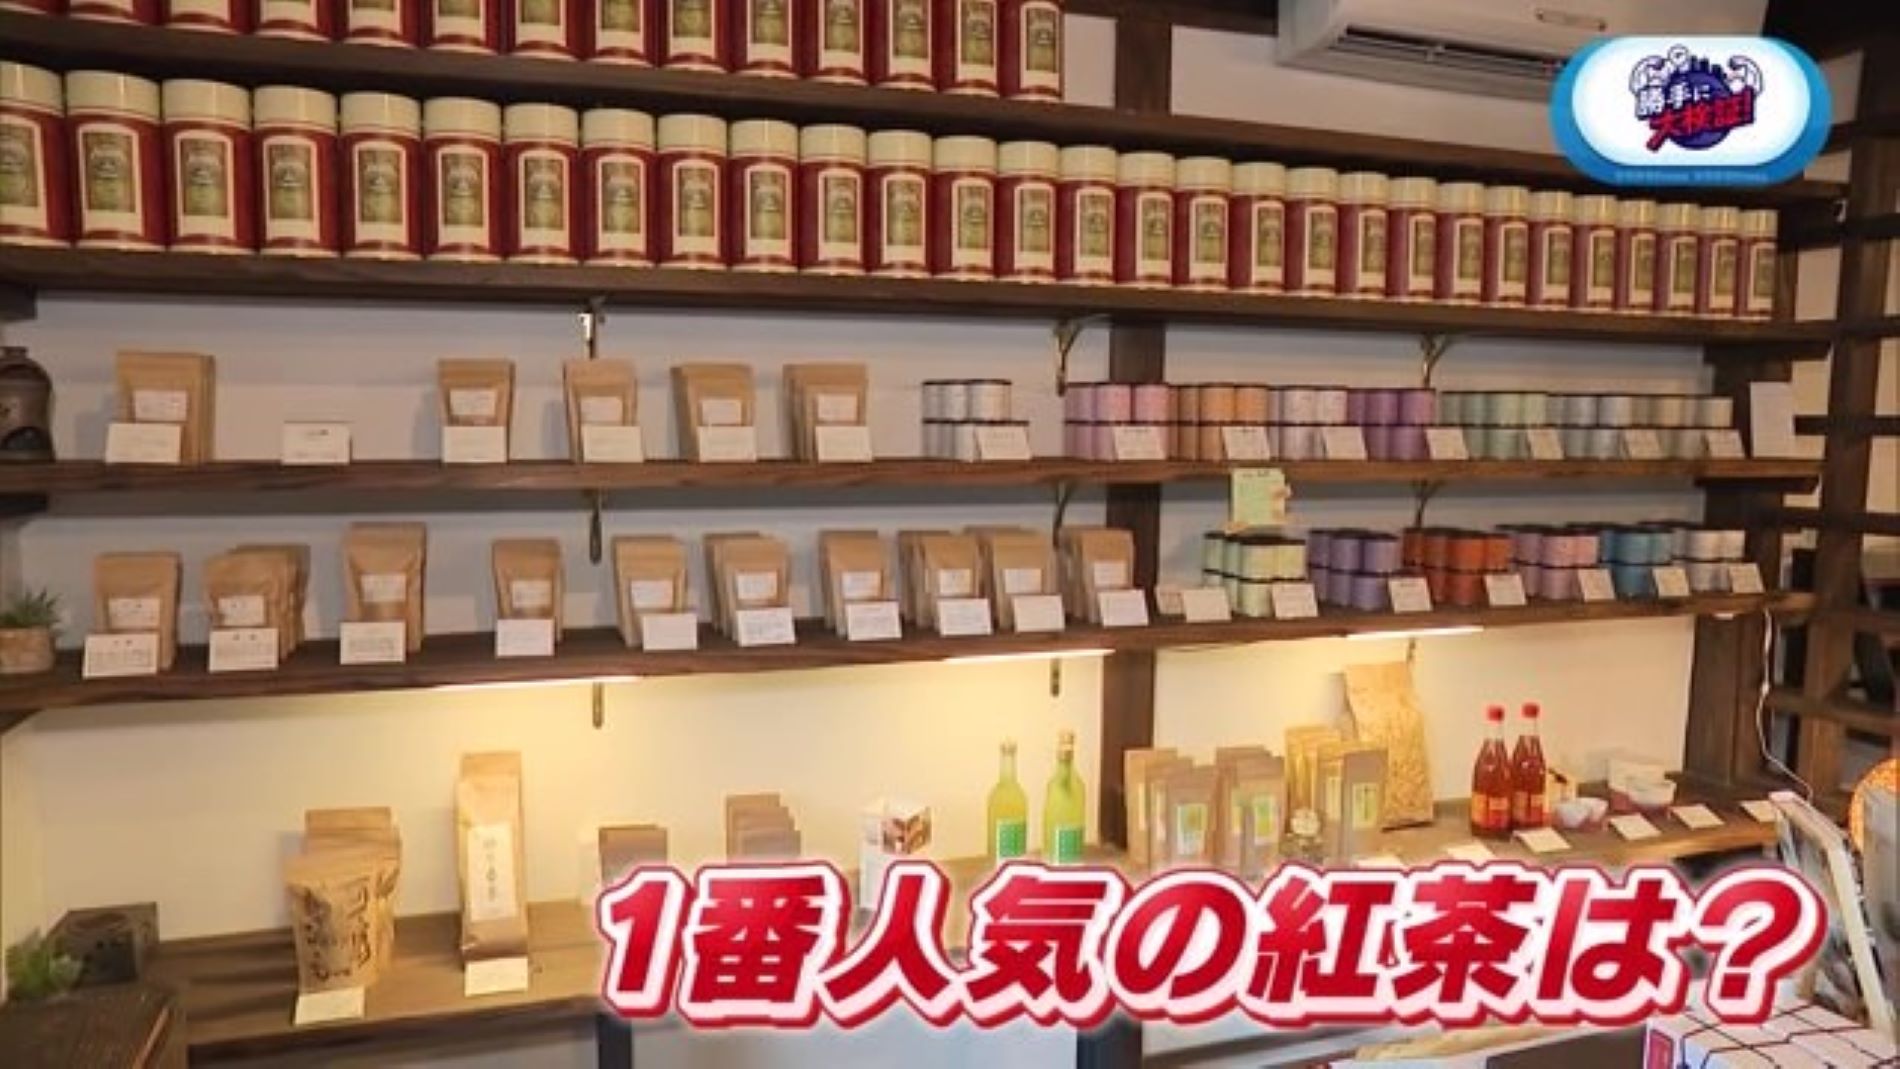 「和紅茶専門店 紅葉」で紅茶の1番人気商品を当てるまで帰れま10！